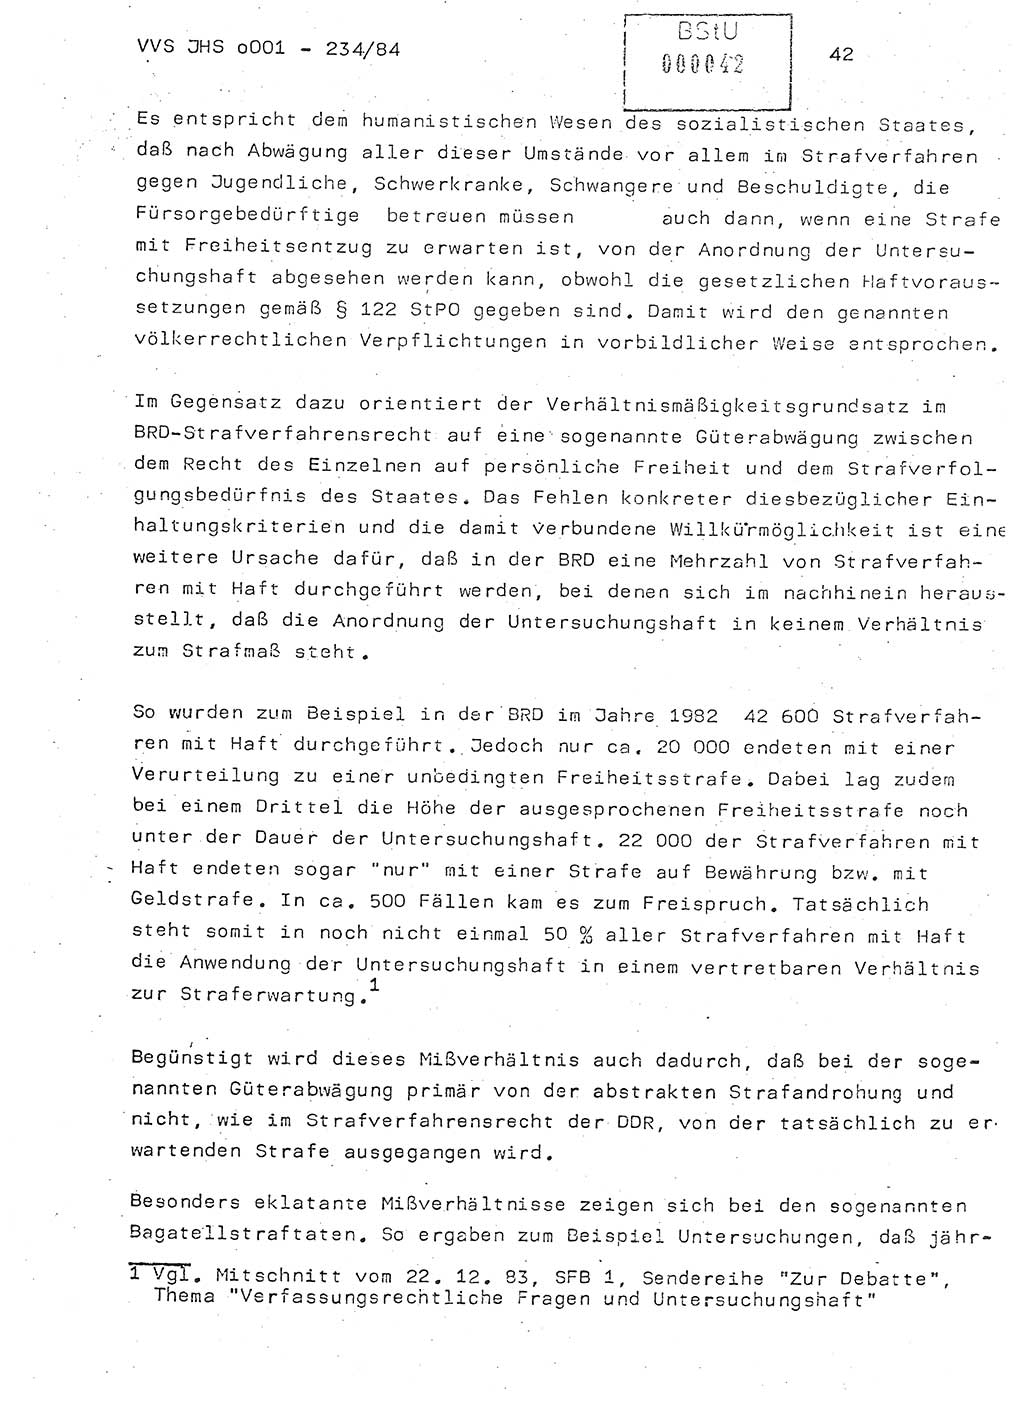 Dissertation Oberst Siegfried Rataizick (Abt. ⅩⅣ), Oberstleutnant Volkmar Heinz (Abt. ⅩⅣ), Oberstleutnant Werner Stein (HA Ⅸ), Hauptmann Heinz Conrad (JHS), Ministerium für Staatssicherheit (MfS) [Deutsche Demokratische Republik (DDR)], Juristische Hochschule (JHS), Vertrauliche Verschlußsache (VVS) o001-234/84, Potsdam 1984, Seite 42 (Diss. MfS DDR JHS VVS o001-234/84 1984, S. 42)